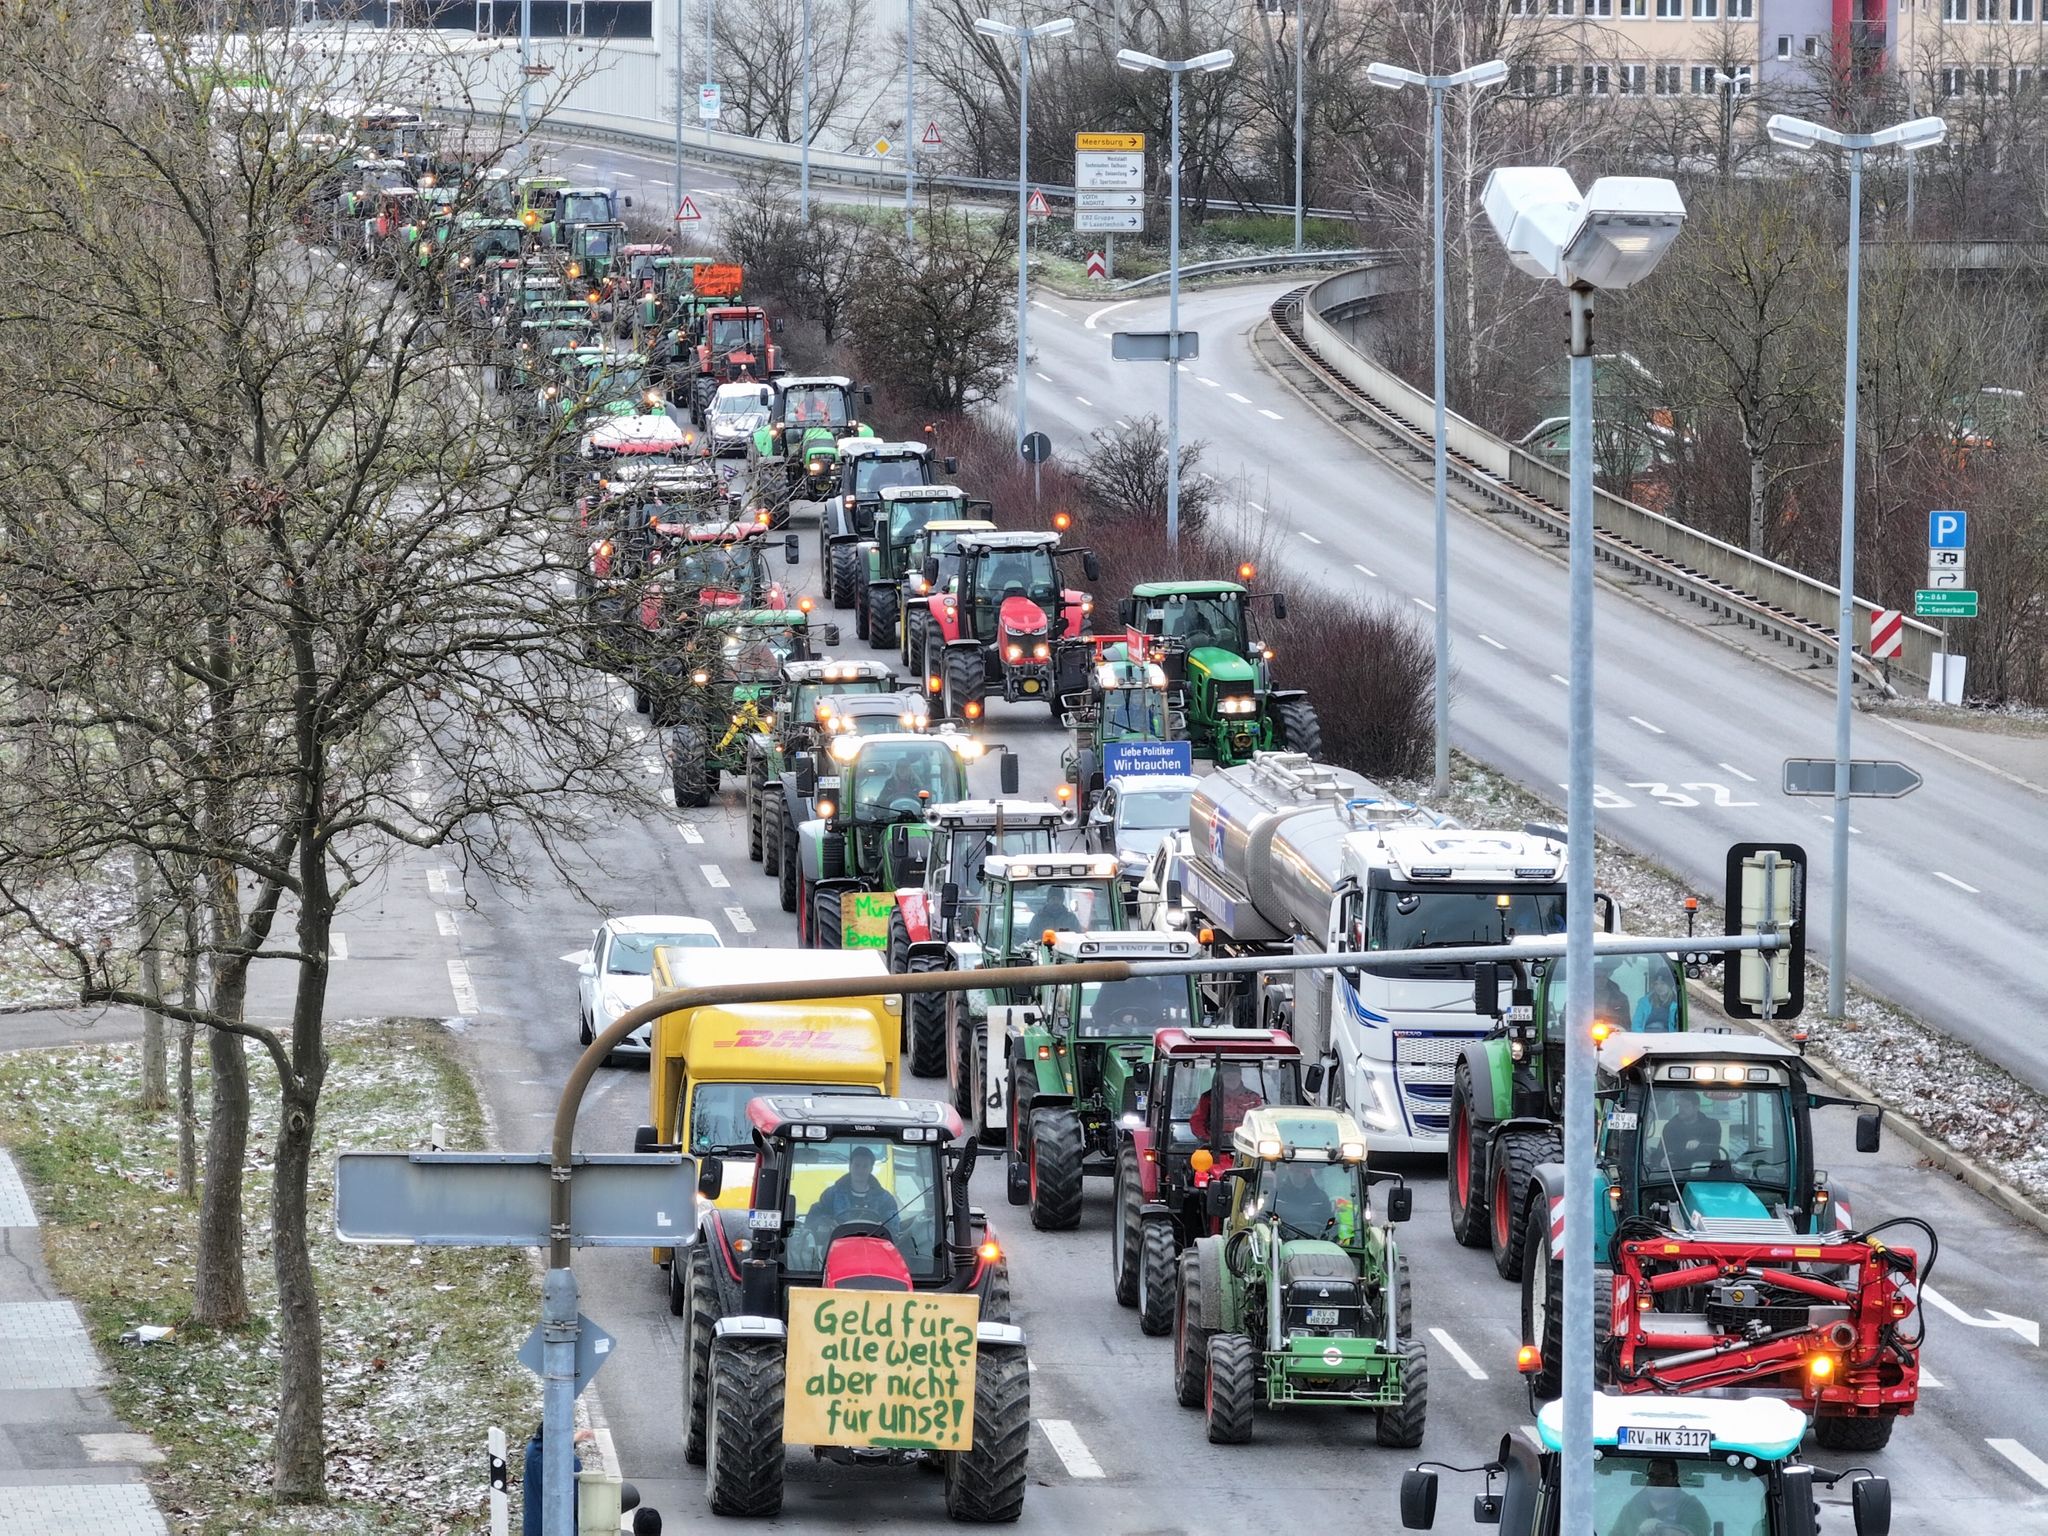 Als Antwort auf die Sparpläne der Bundesregierung hat der Bauernverband eine Aktionswoche ab dem 8. Januar ausgerufen - unter anderem mit Blockaden an Autobahnauffahrten und Traktorkolonnen.